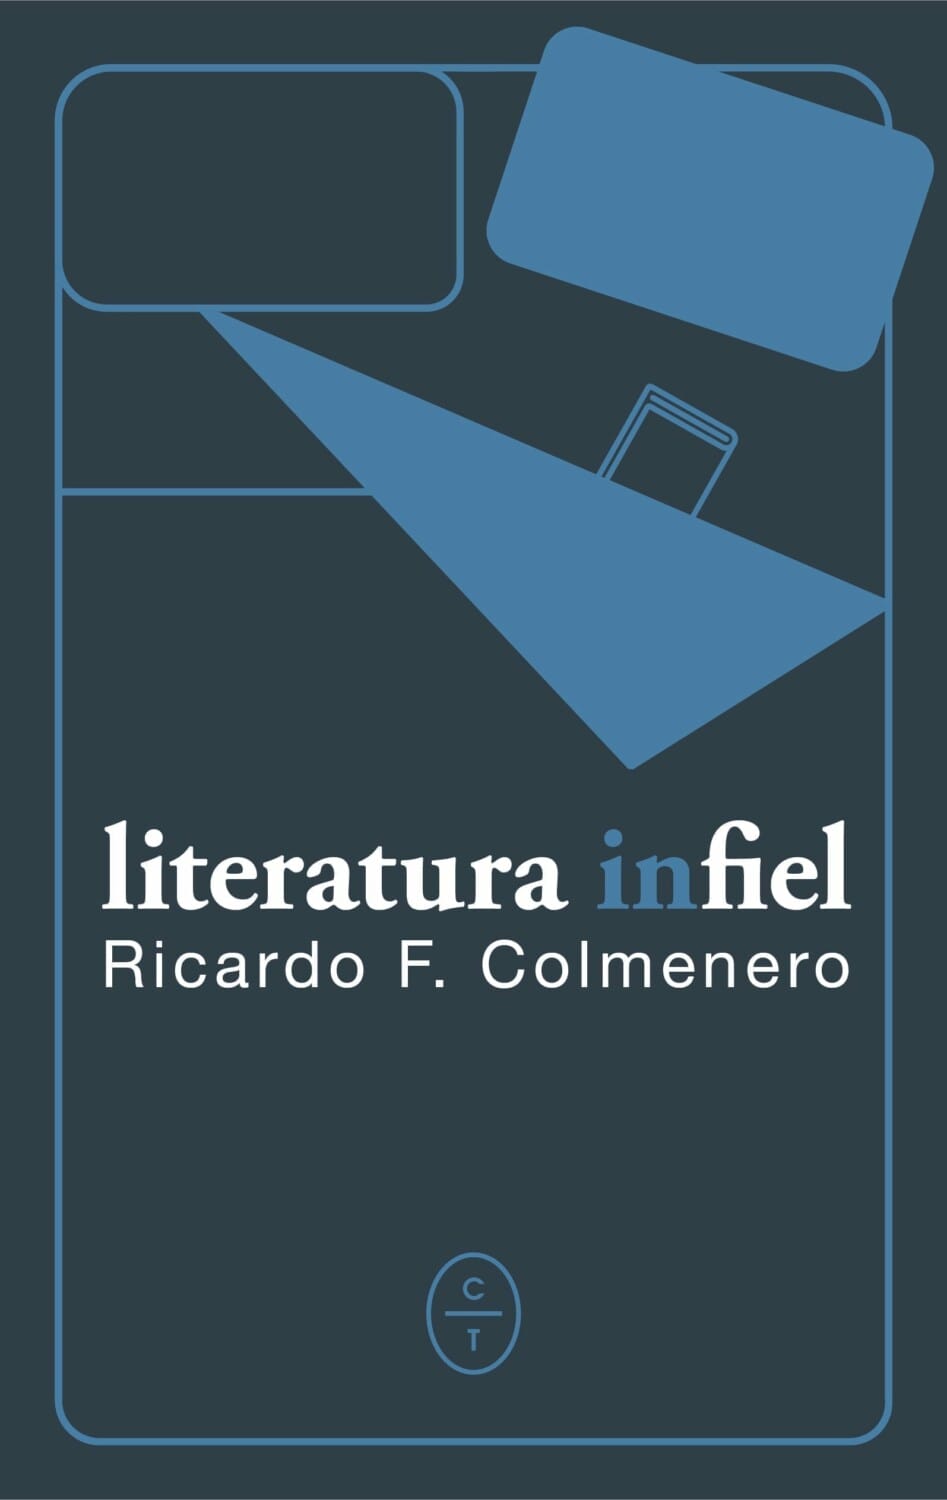 Literatura Infiel, Nuevo Libro de Ricardo F. Colmenero